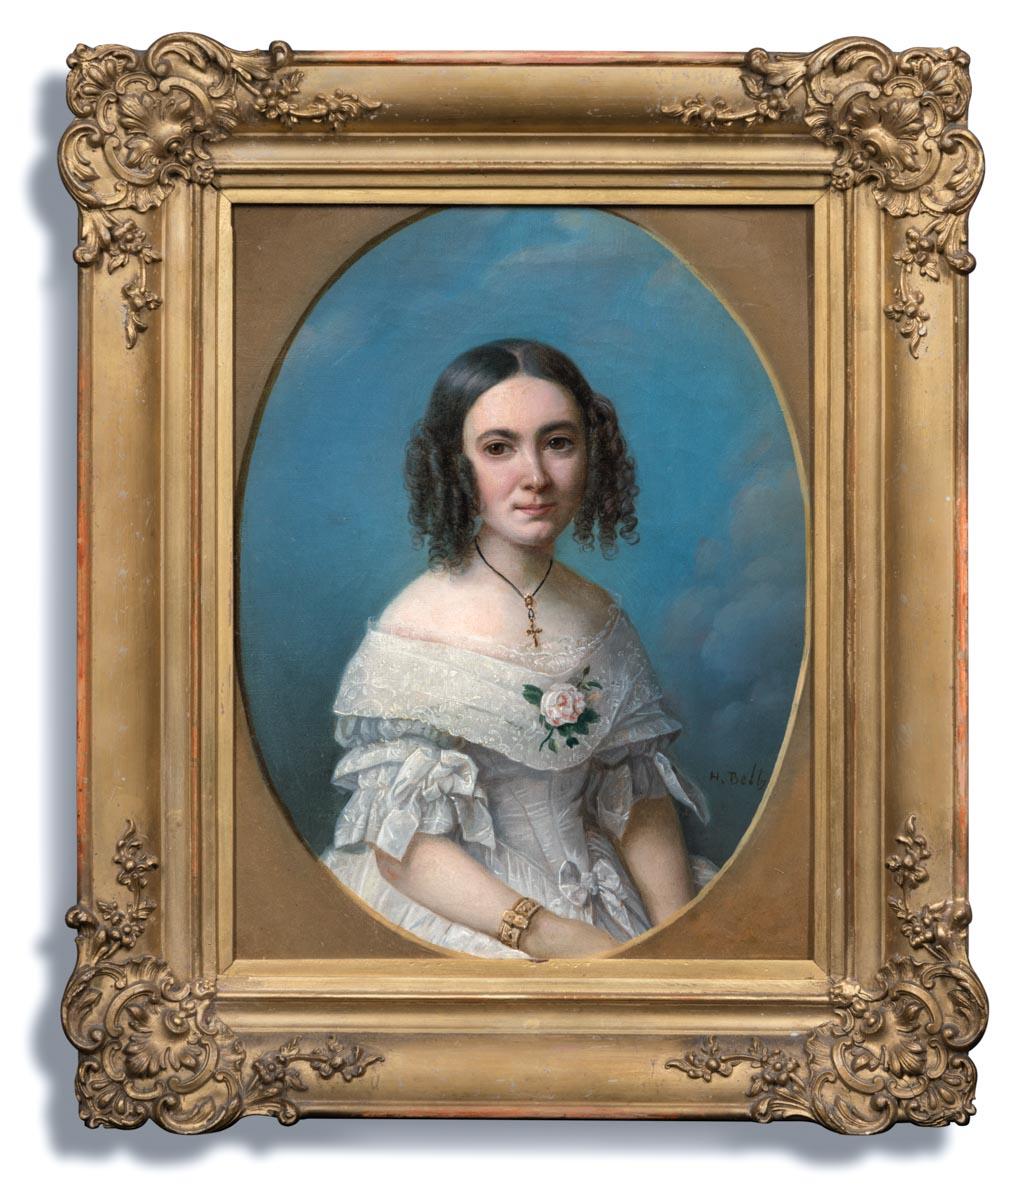 Portrait Painting Heinrich Beltz - Portrait signé d'une jeune femme en robe blanche 1840, peinture à l'huile sur toile